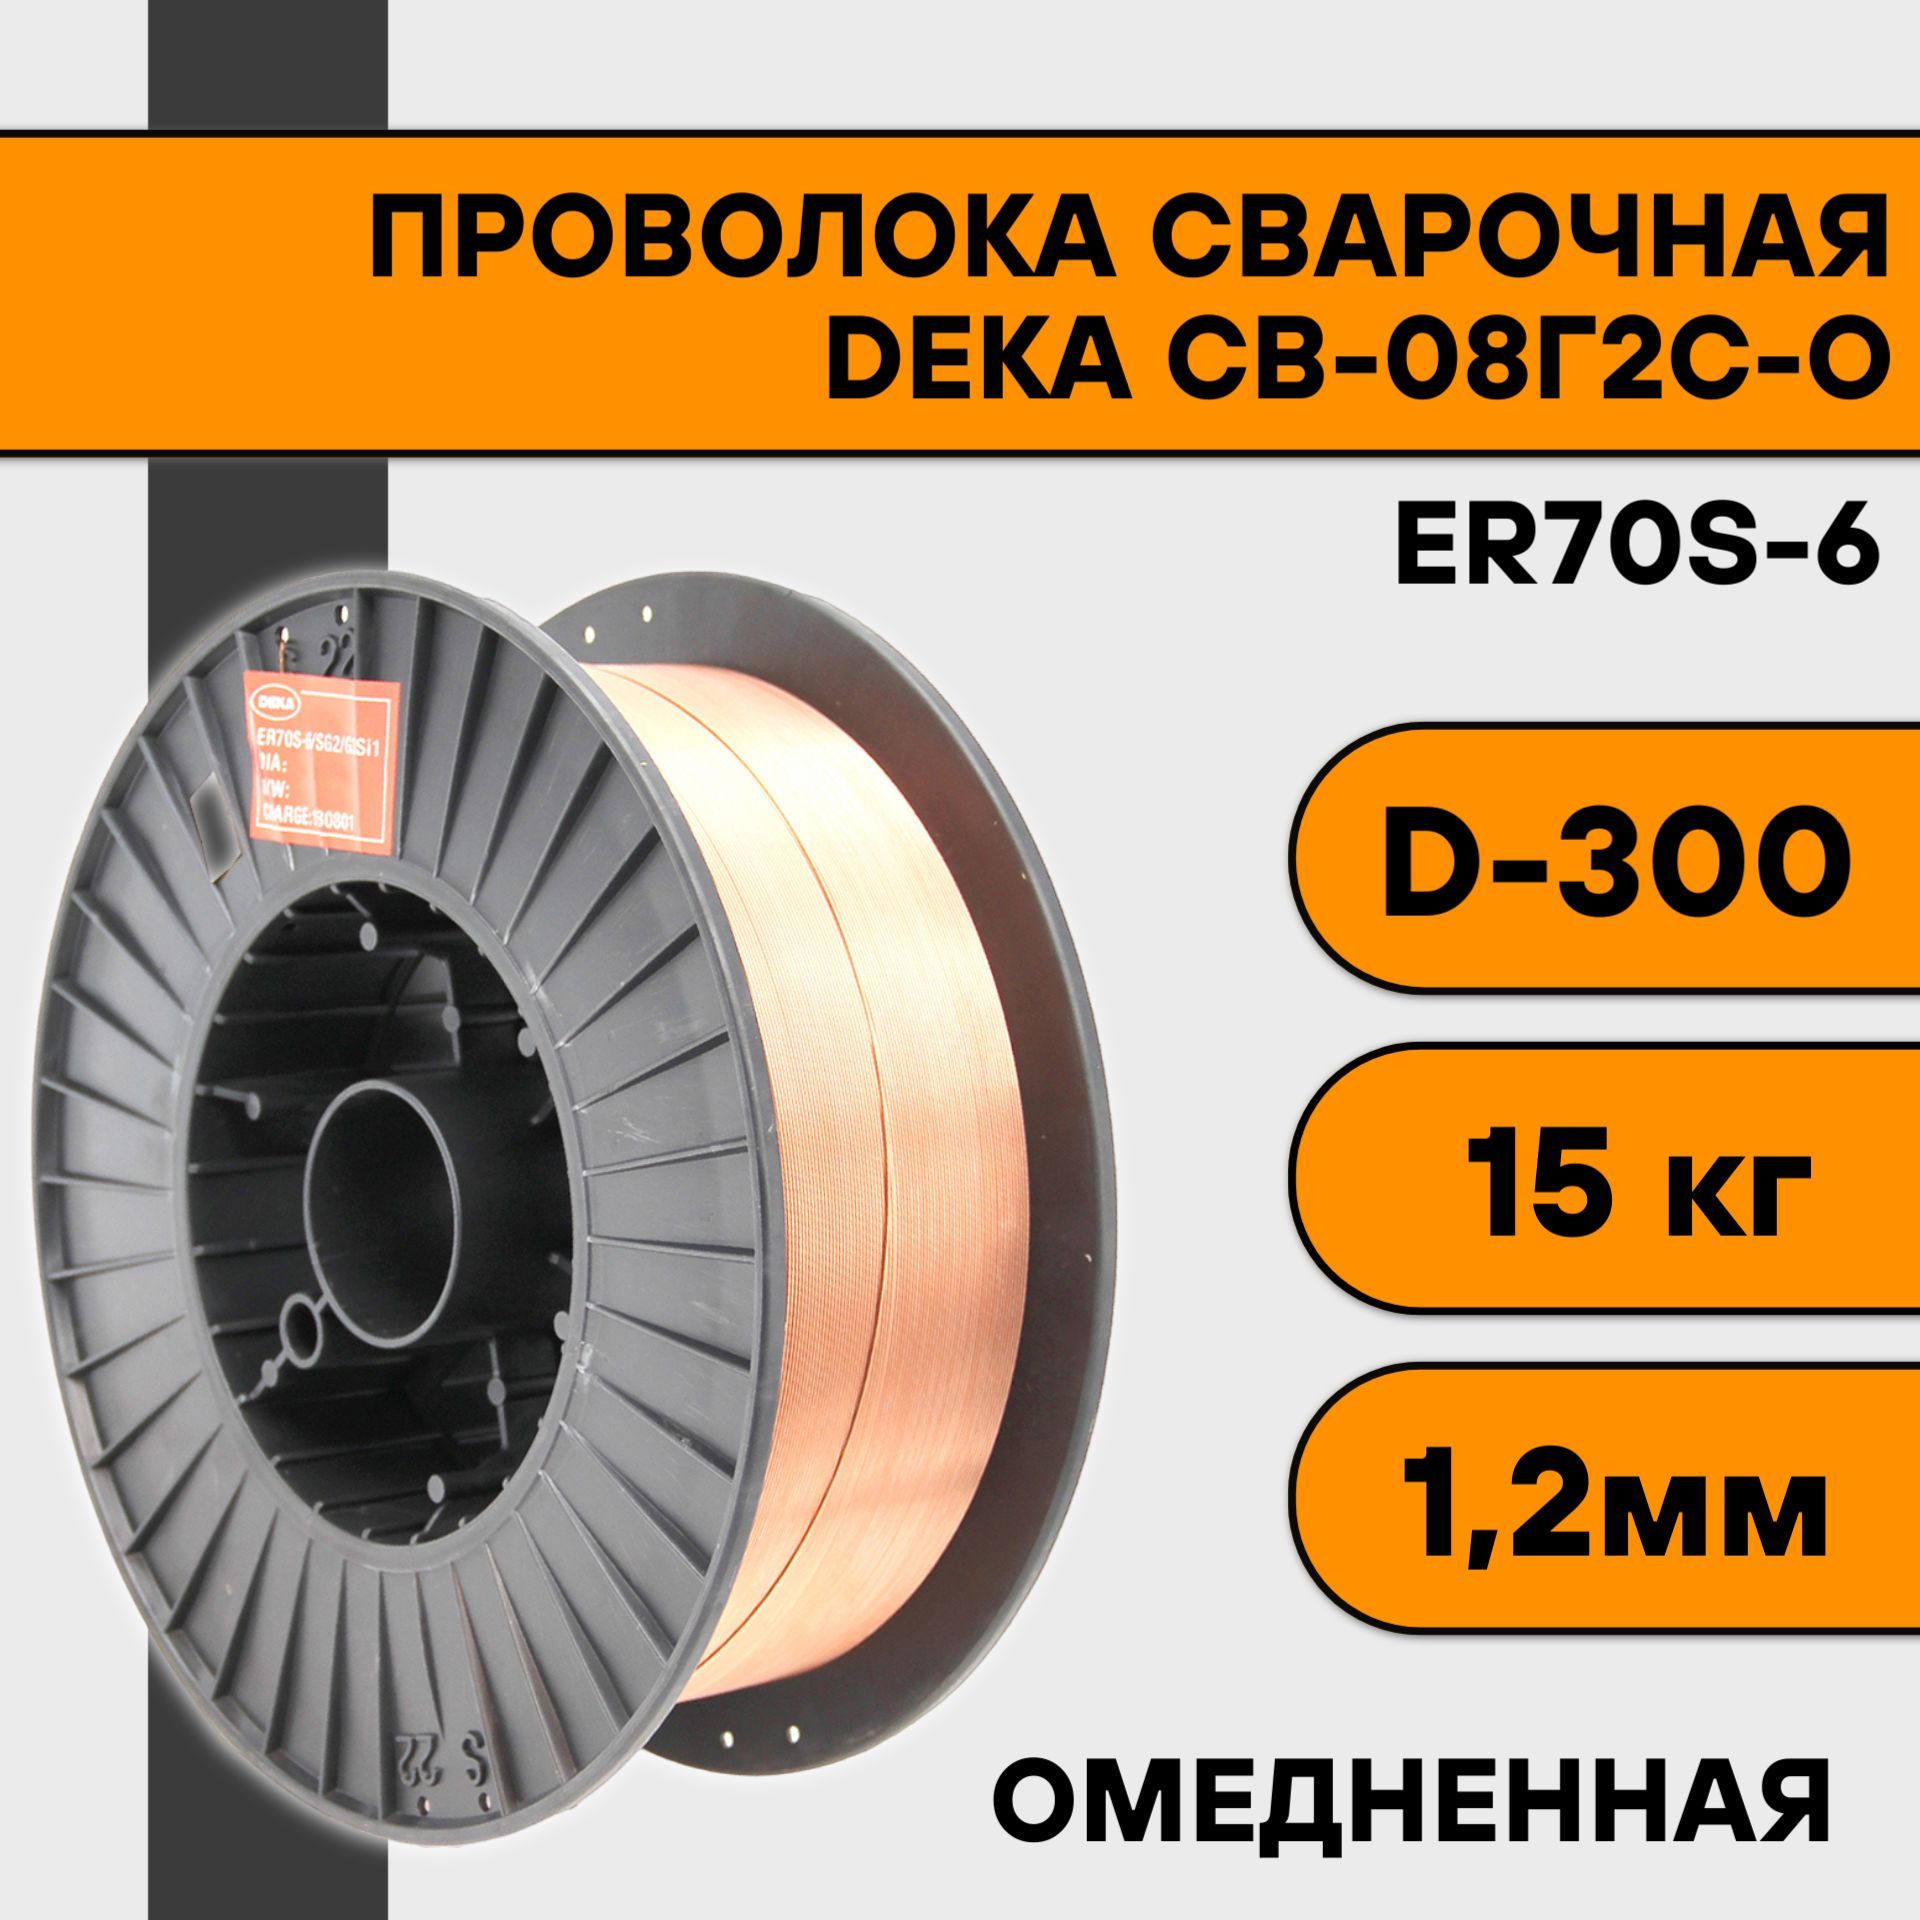 Сварочная проволока омедненная Deka ER70S-6 ф 1,2 мм (15 кг) D300 проволока сварочная омеднённая 1 2 мм 15 кг er70s 6